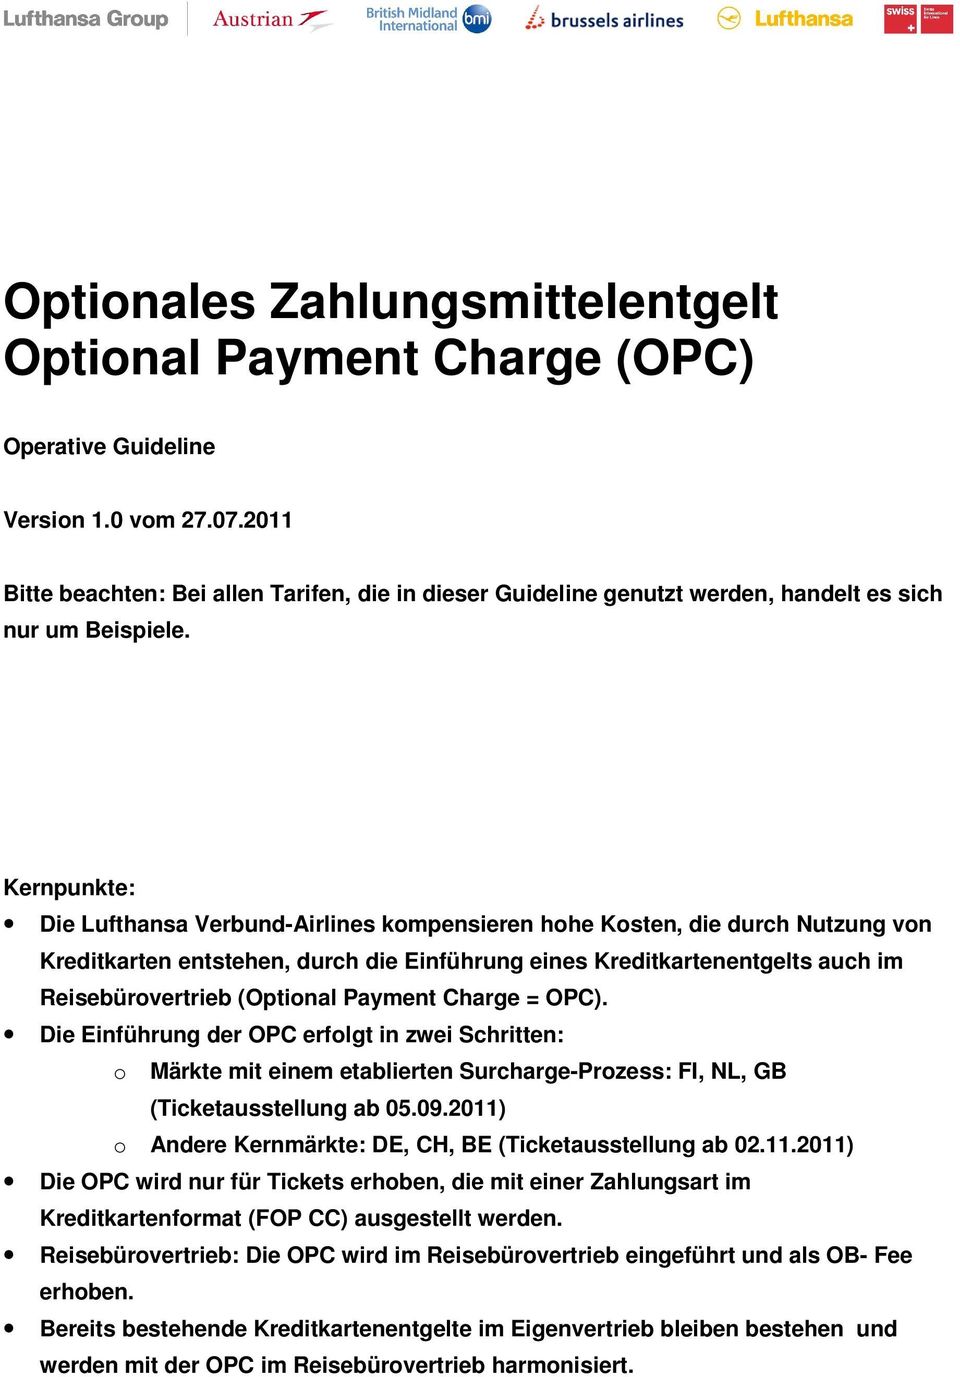 Kernpunkte: Die Lufthansa Verbund-Airlines kompensieren hohe Kosten, die durch Nutzung von Kreditkarten entstehen, durch die Einführung eines Kreditkartenentgelts auch im Reisebürovertrieb (Optional